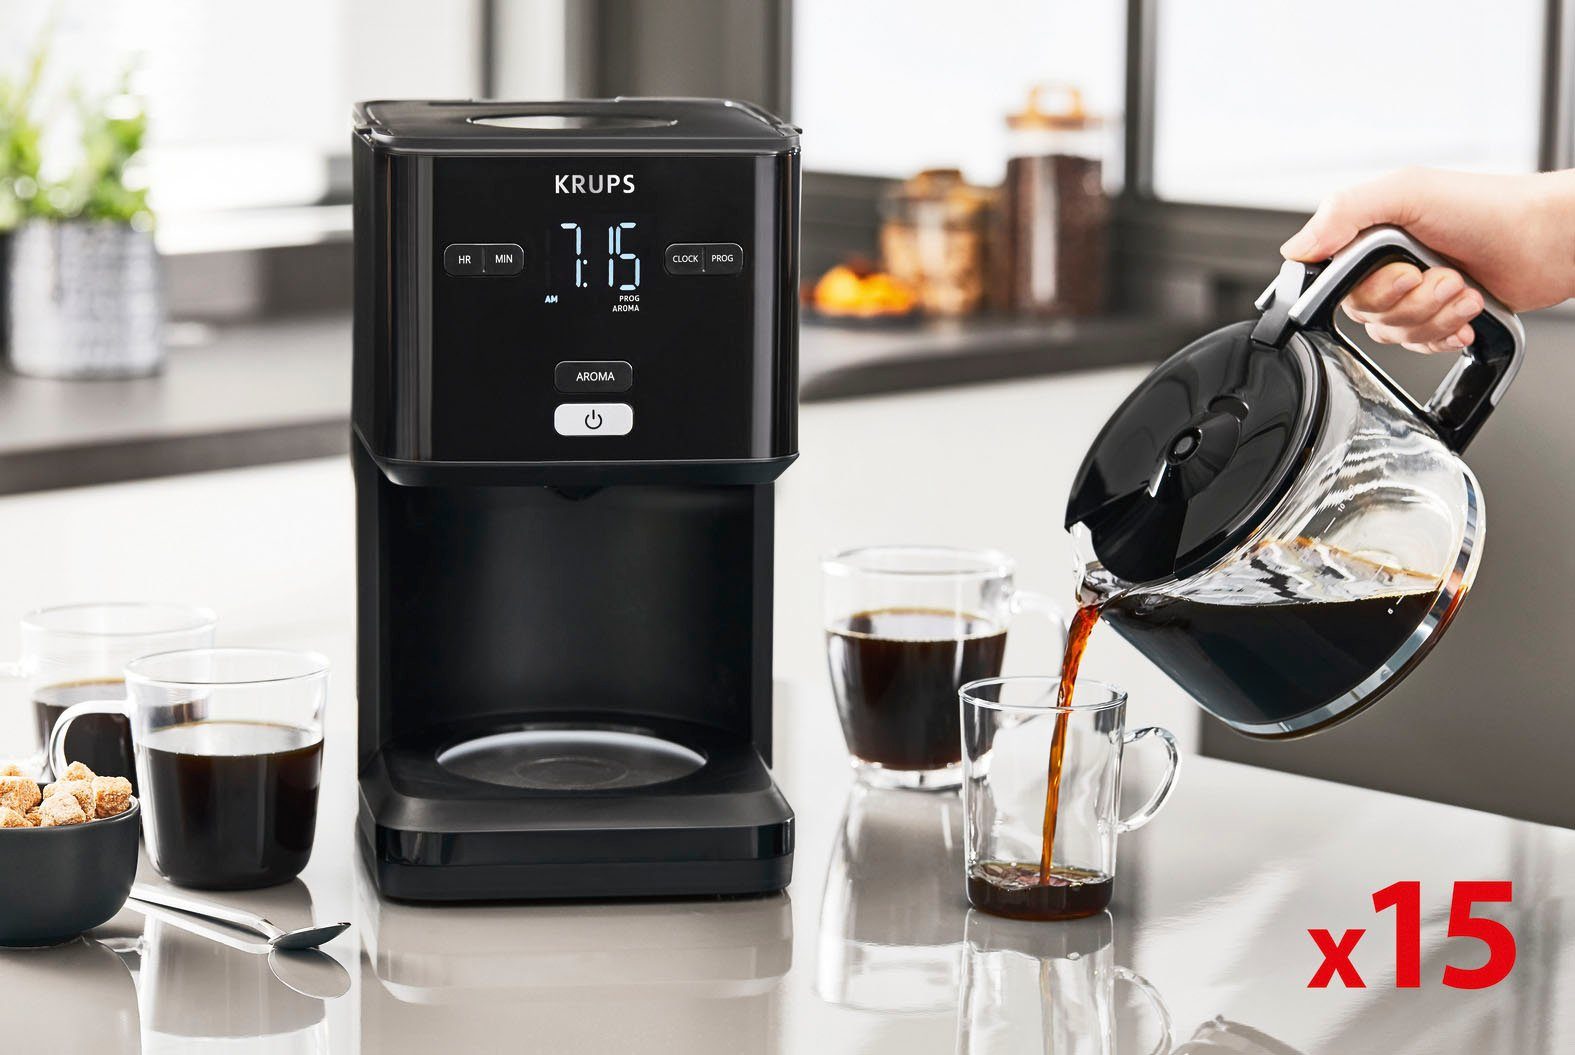 Krups Smart'n Light, Minuten Filterkaffeemaschine automatische nach 1,25l KM6008 30 Abschaltung 24-Std-Timer, Kaffeekanne,